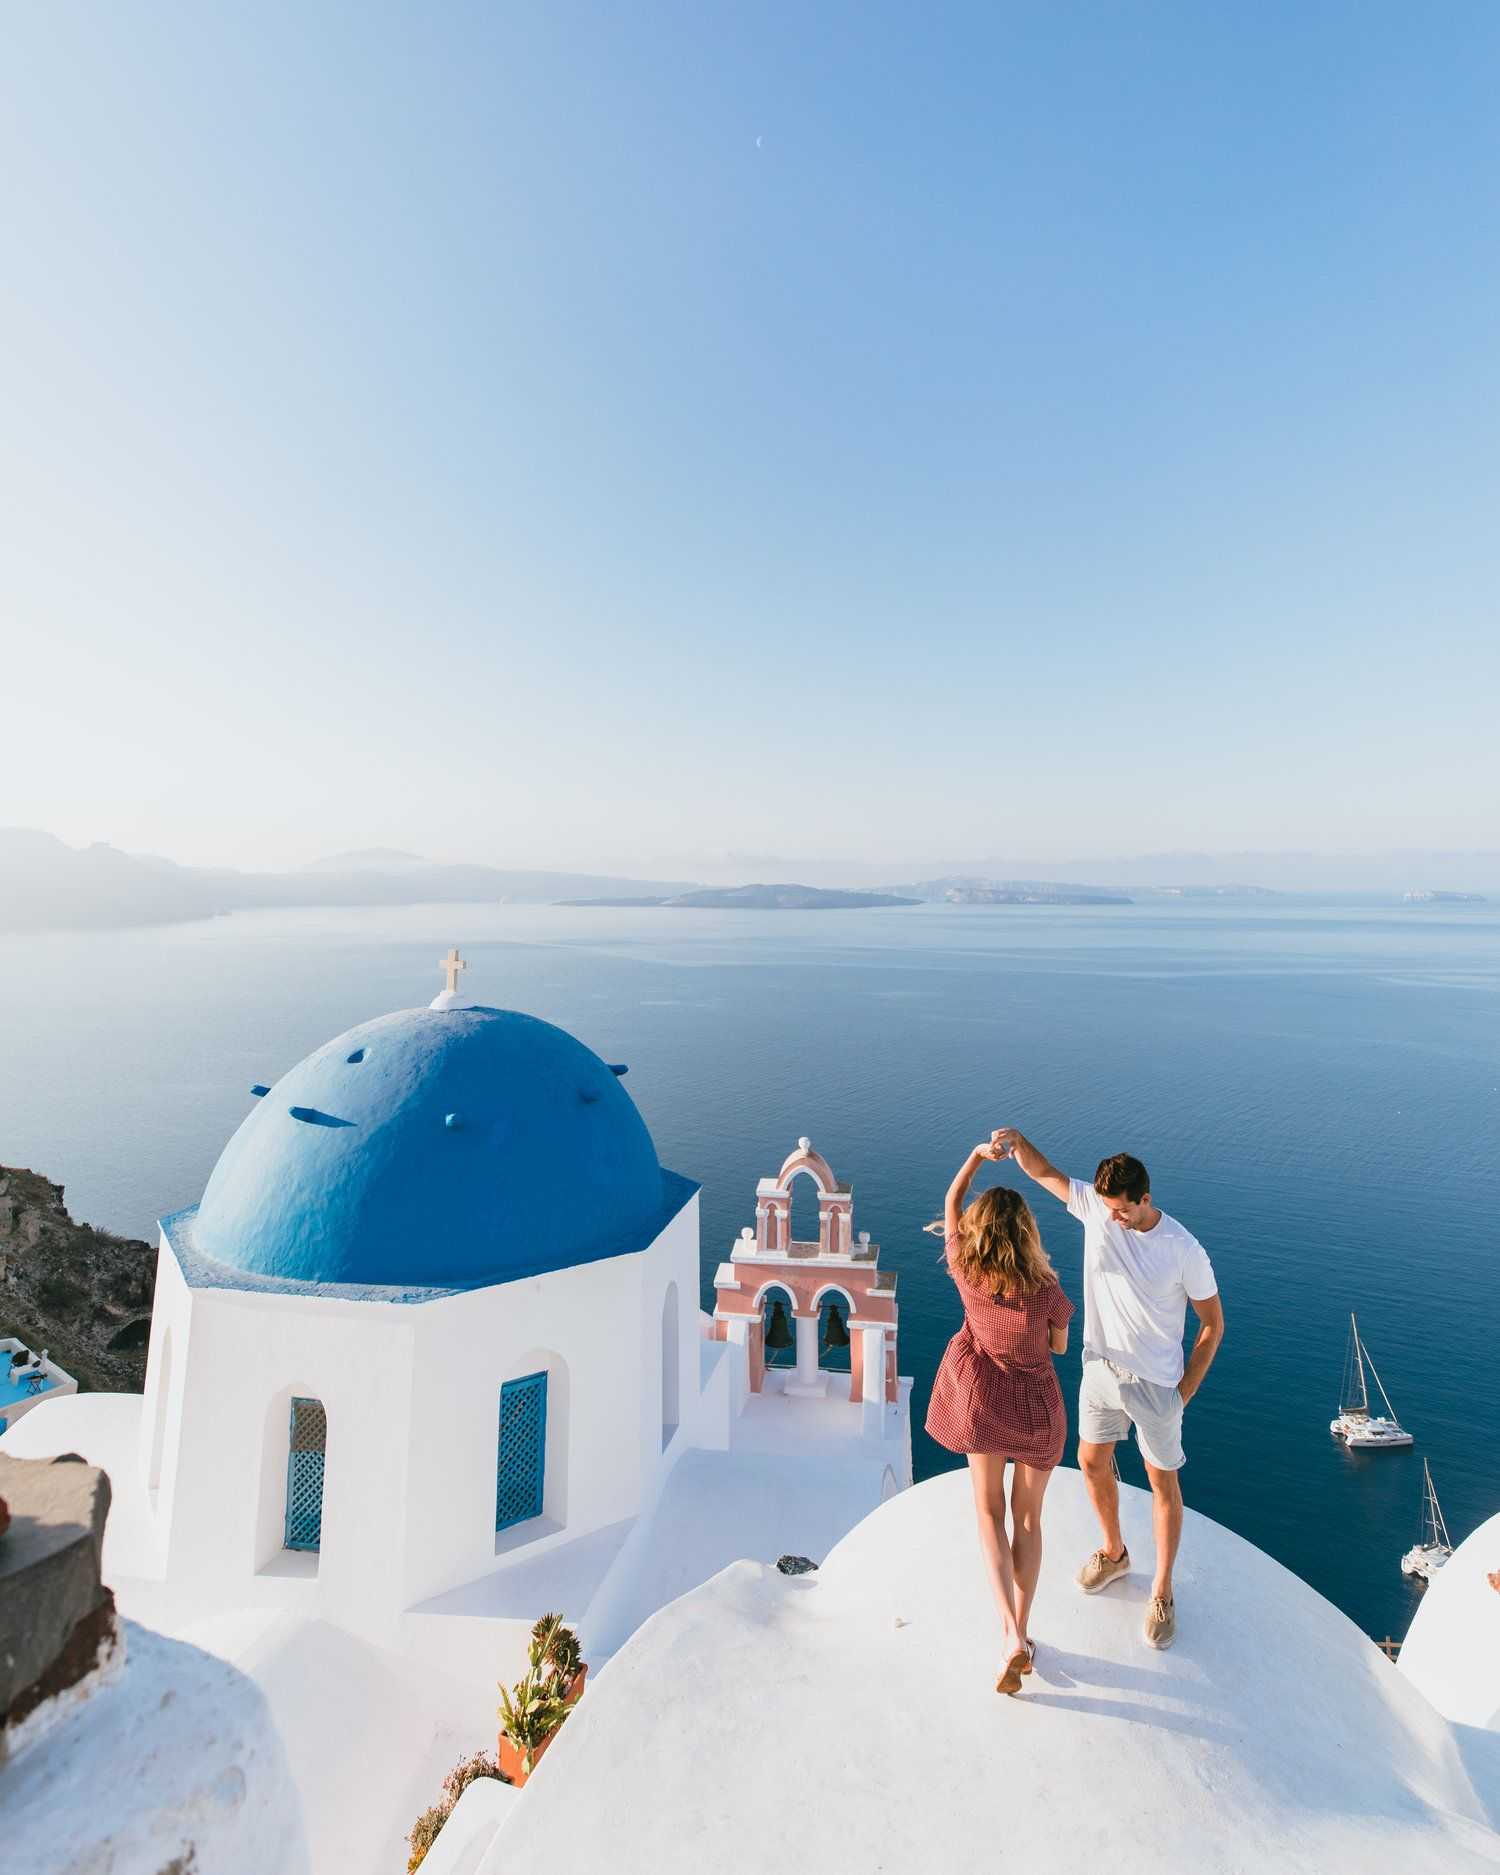 All inclusive в греции — обзор отелей для семейного отдыха